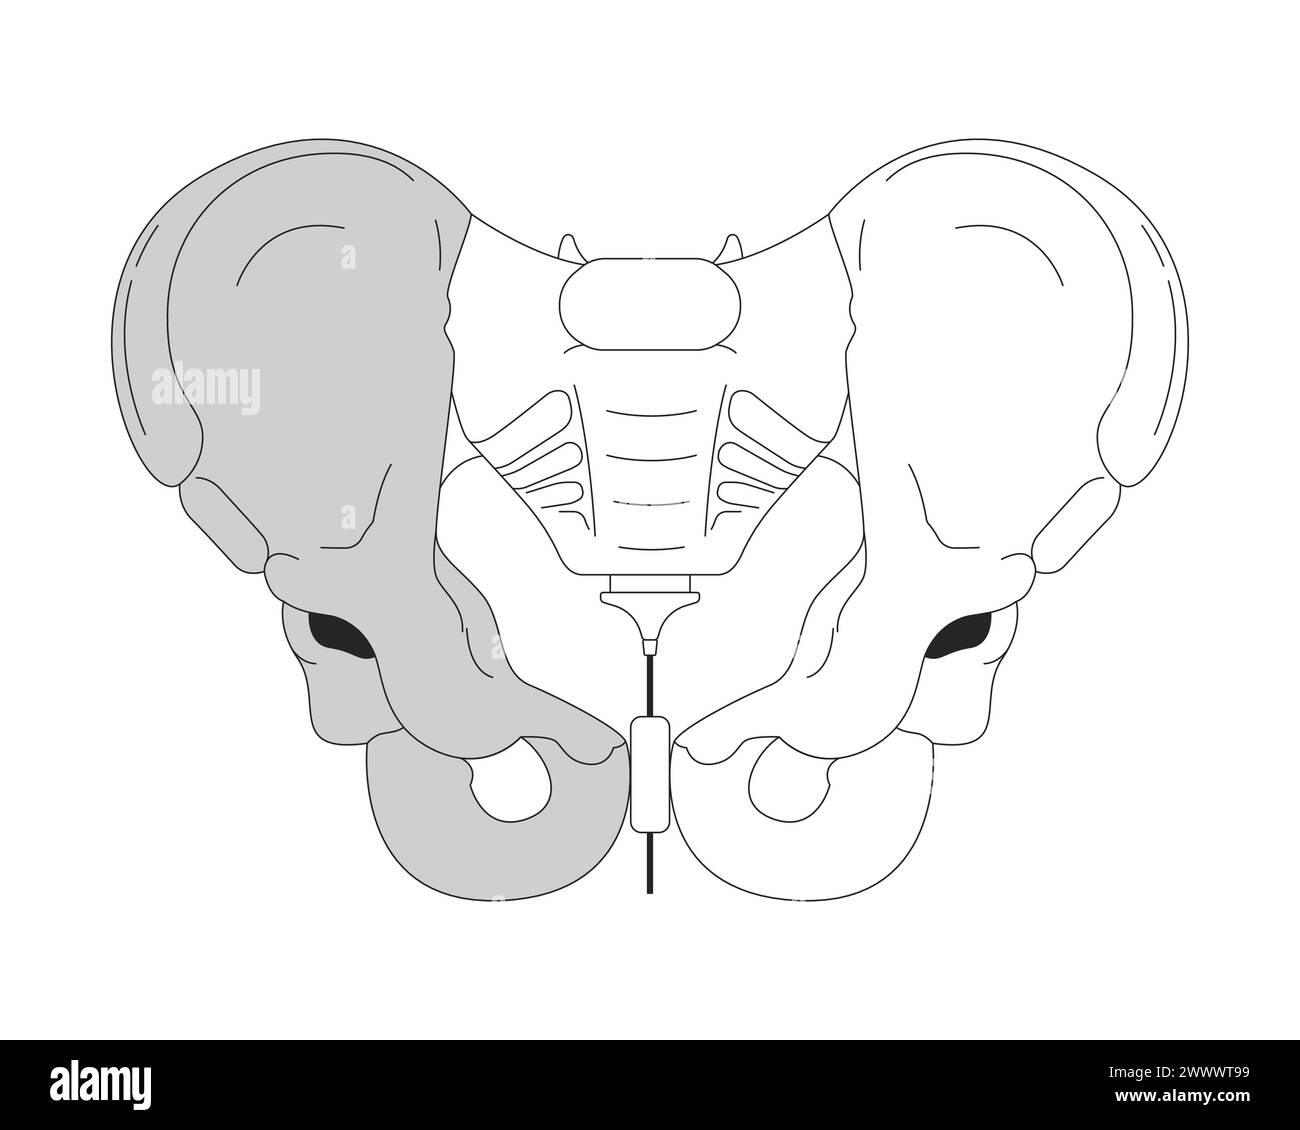 Anatomie de l'os du bassin objet de dessin animé en ligne 2D noir et blanc Illustration de Vecteur